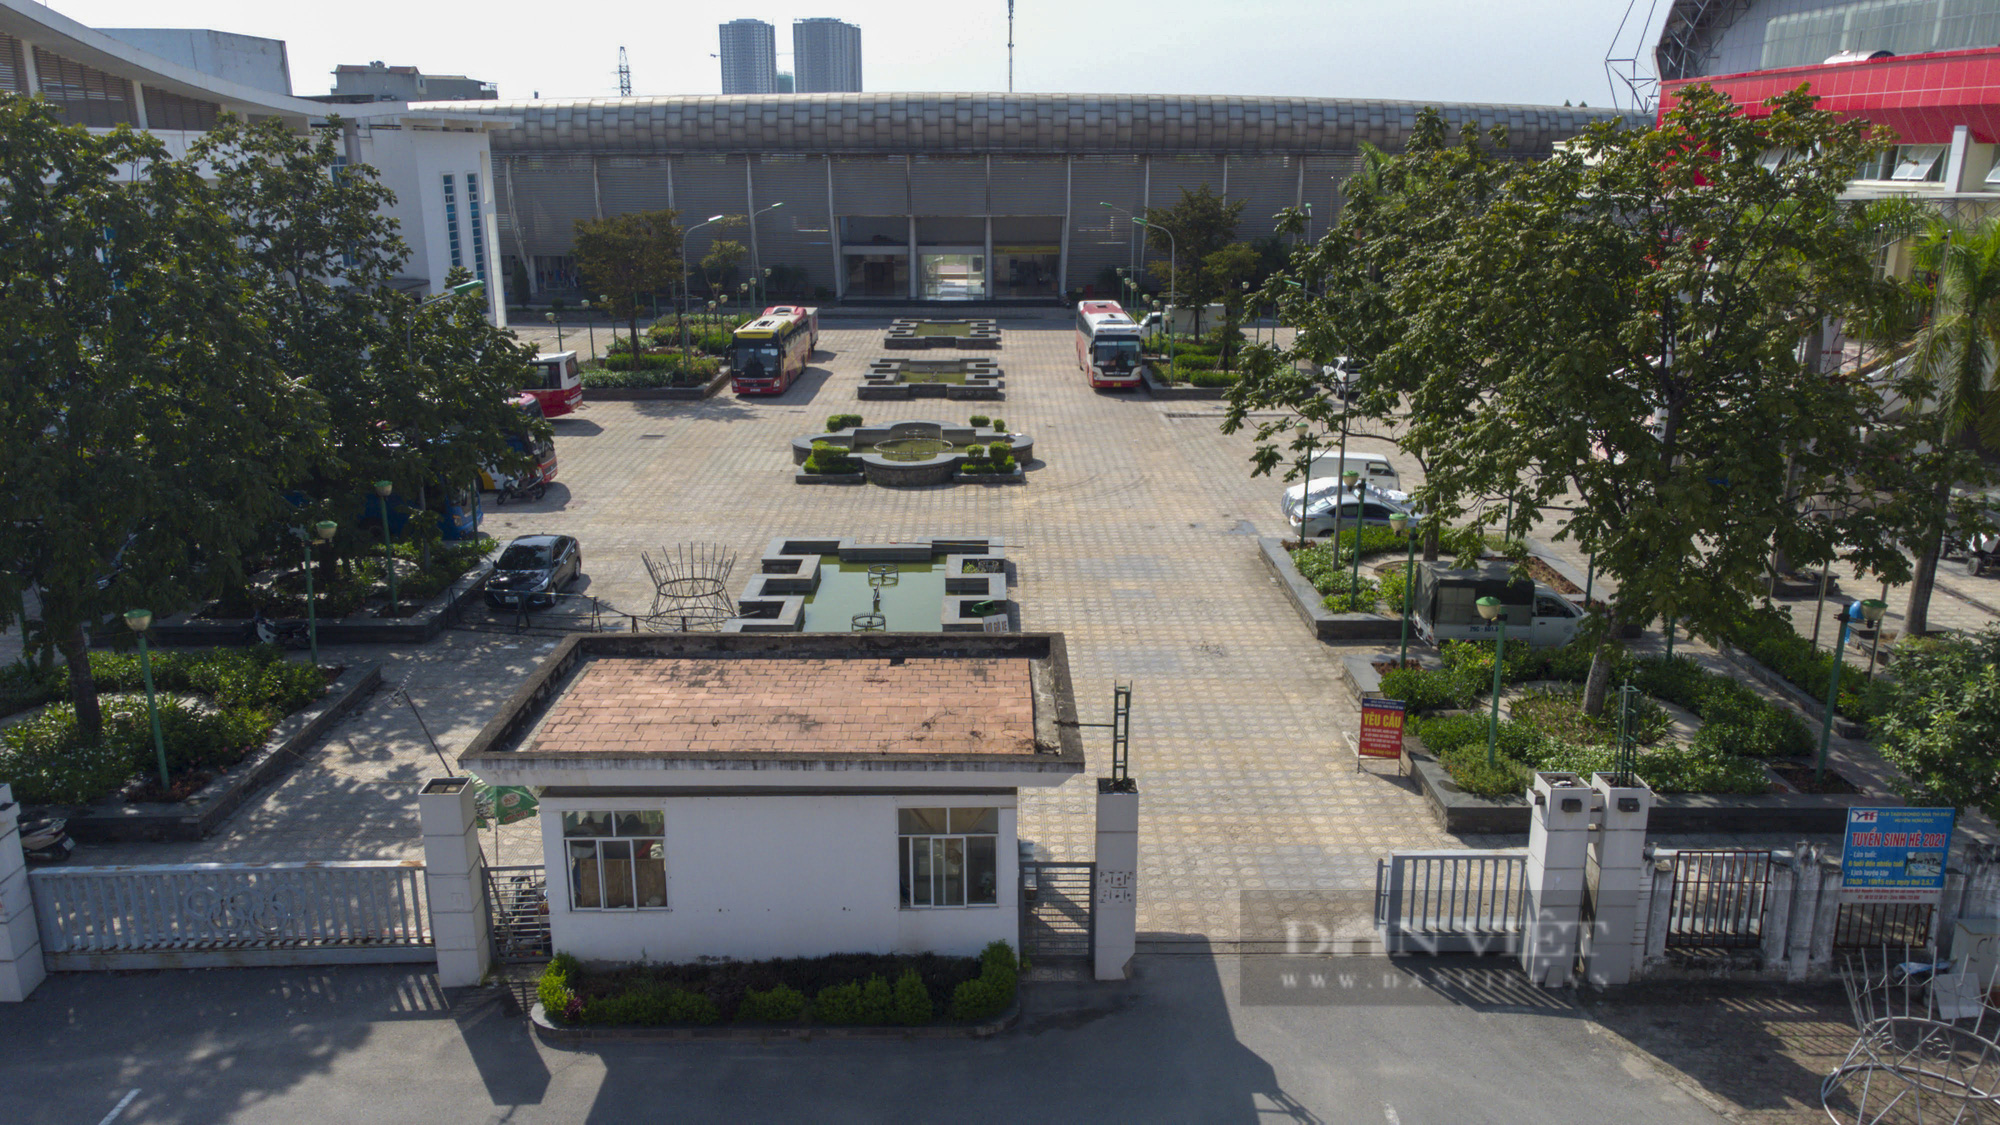 Hà Nội: Cận cảnh bến xe, sân vận động được đề xuất để tập kết hàng hoá - Ảnh 10.